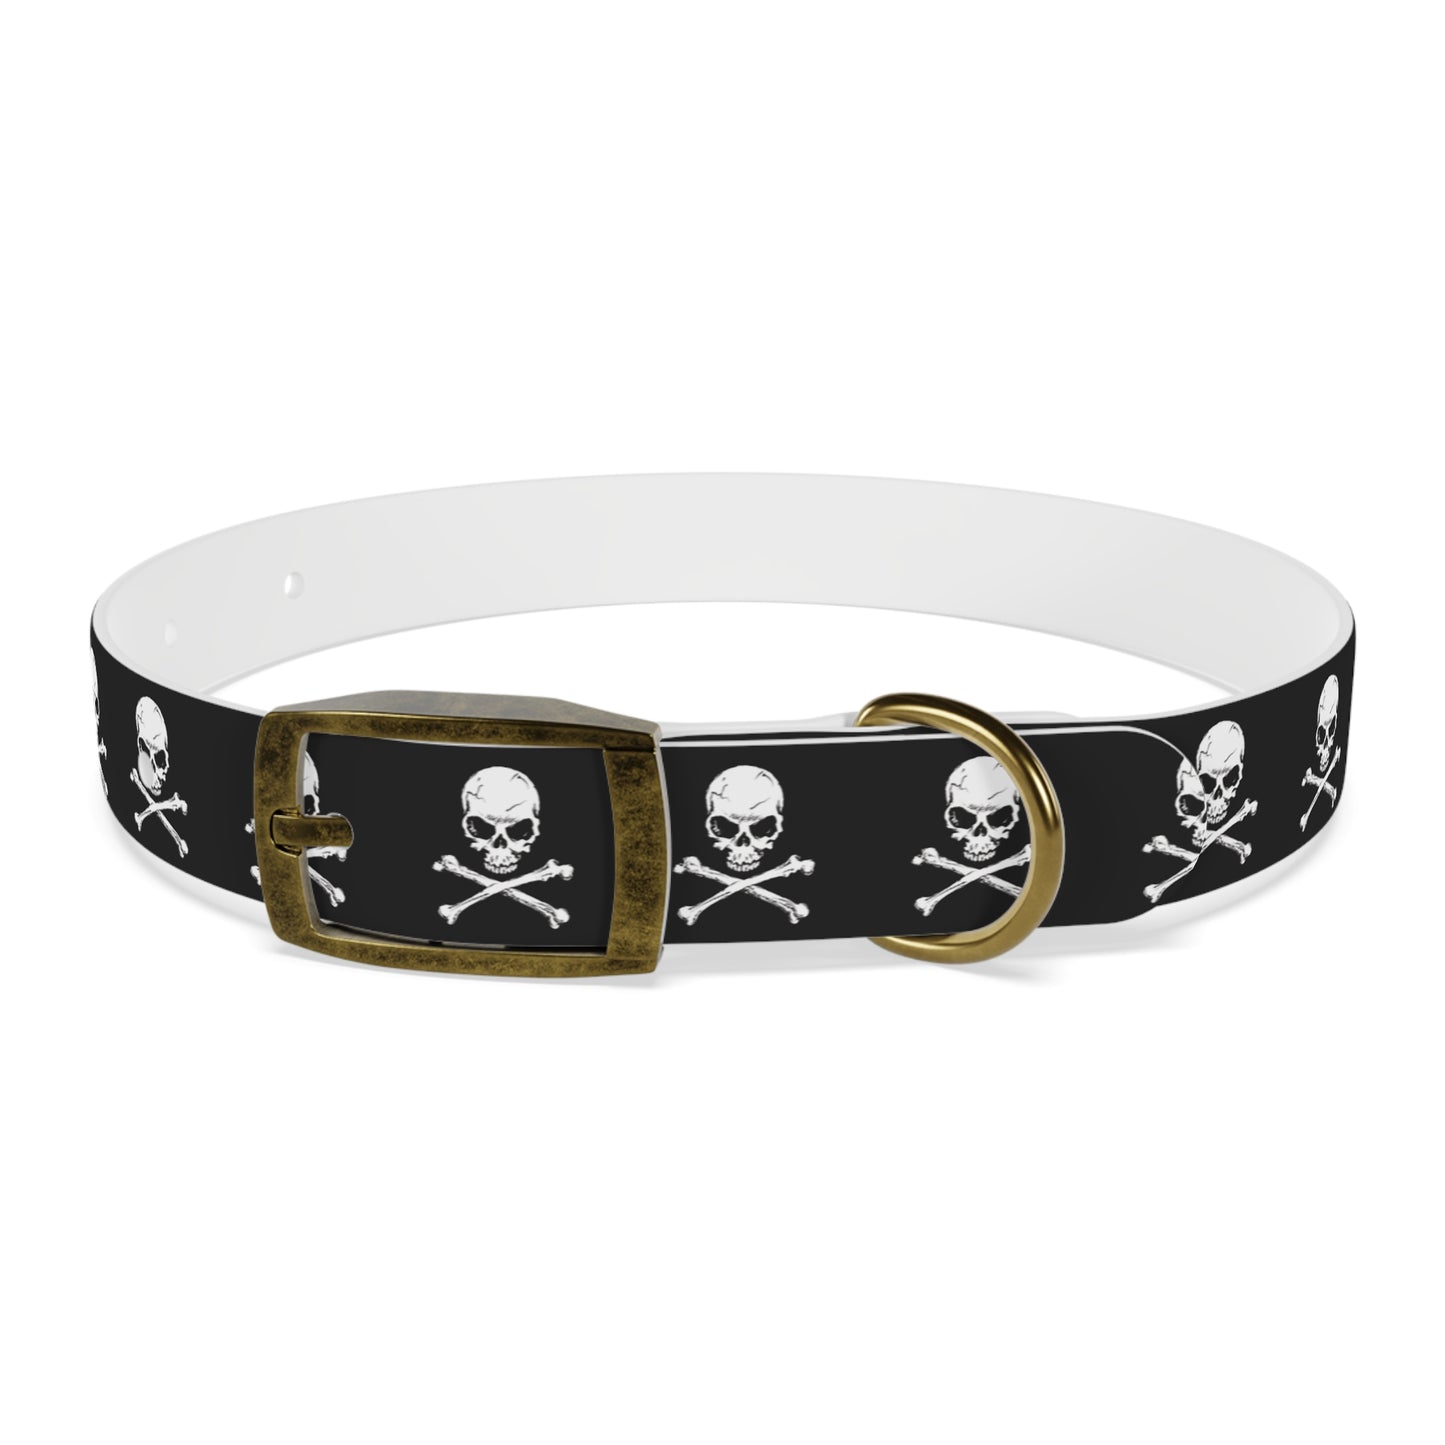 Skull & Crossbones Dog Collar